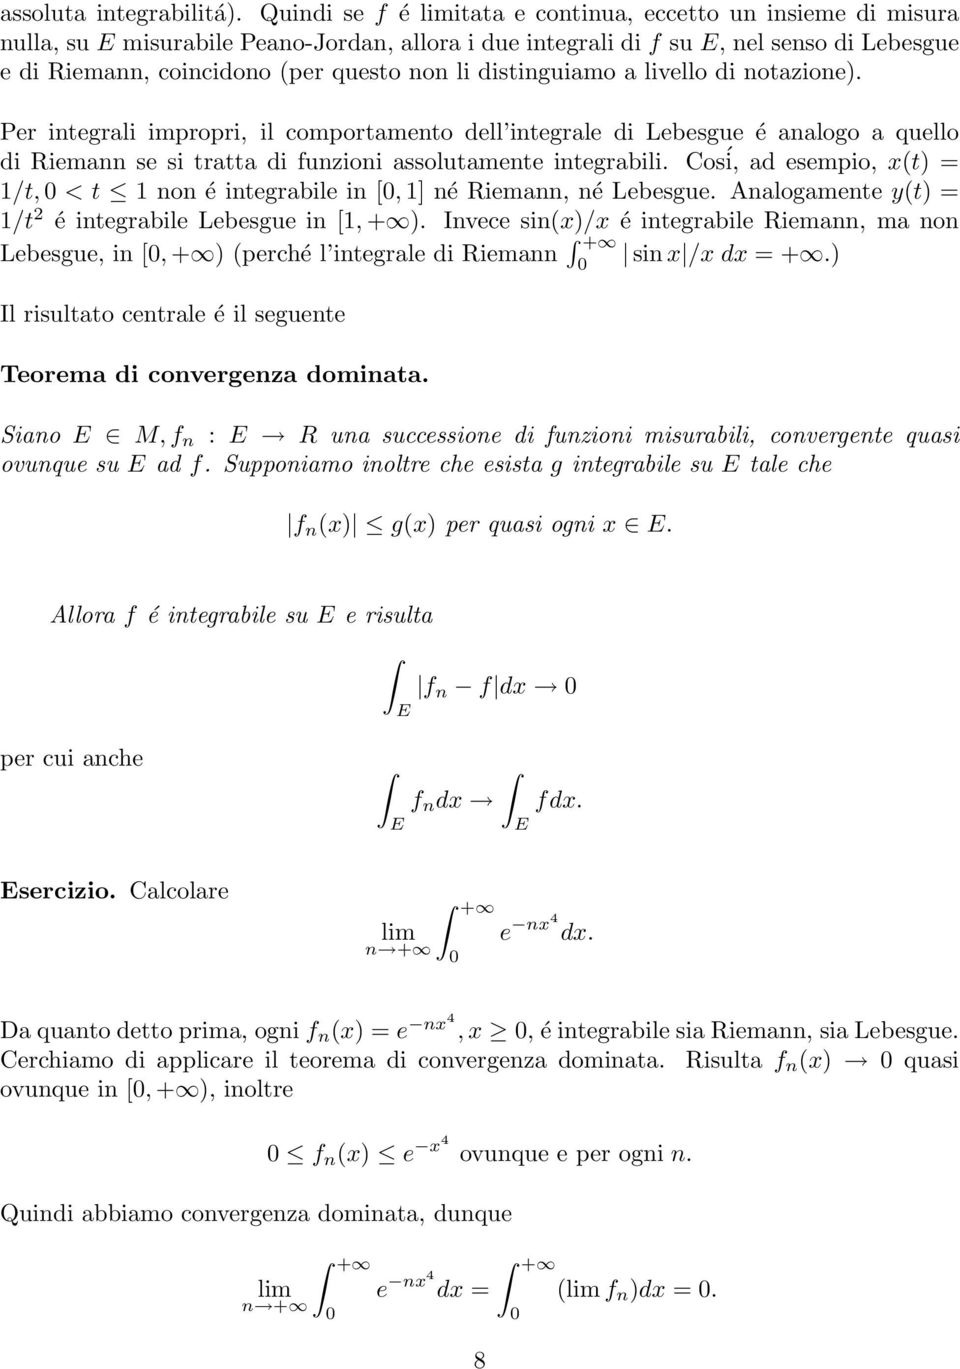 livello di notzione). Per integrli impropri, il comportmento dell integrle di Lebesgue é nlogo quello di Riemnn se si trtt di funzioni ssolutmente integrbili.